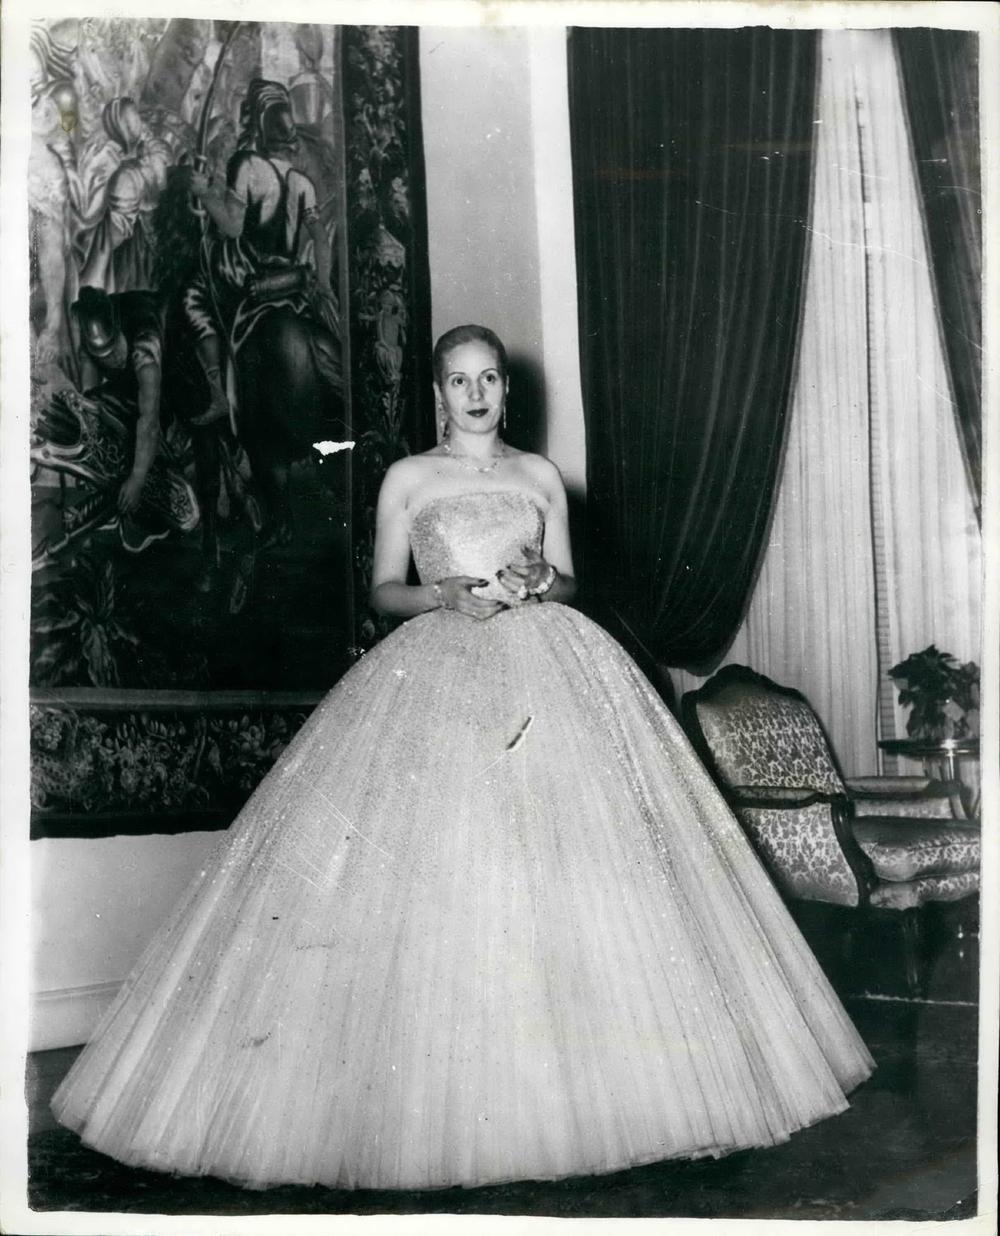 <p>Na današnji dan 1952. godine preminula je očaravajuća Eva Peron, prva supruga predsednika neke zemlje koja je odbijala da stoji u senci i nemo gleda muke <em>malog</em> čoveka, ali i prva koja je izazivala divljenje svojim stilom.</p>